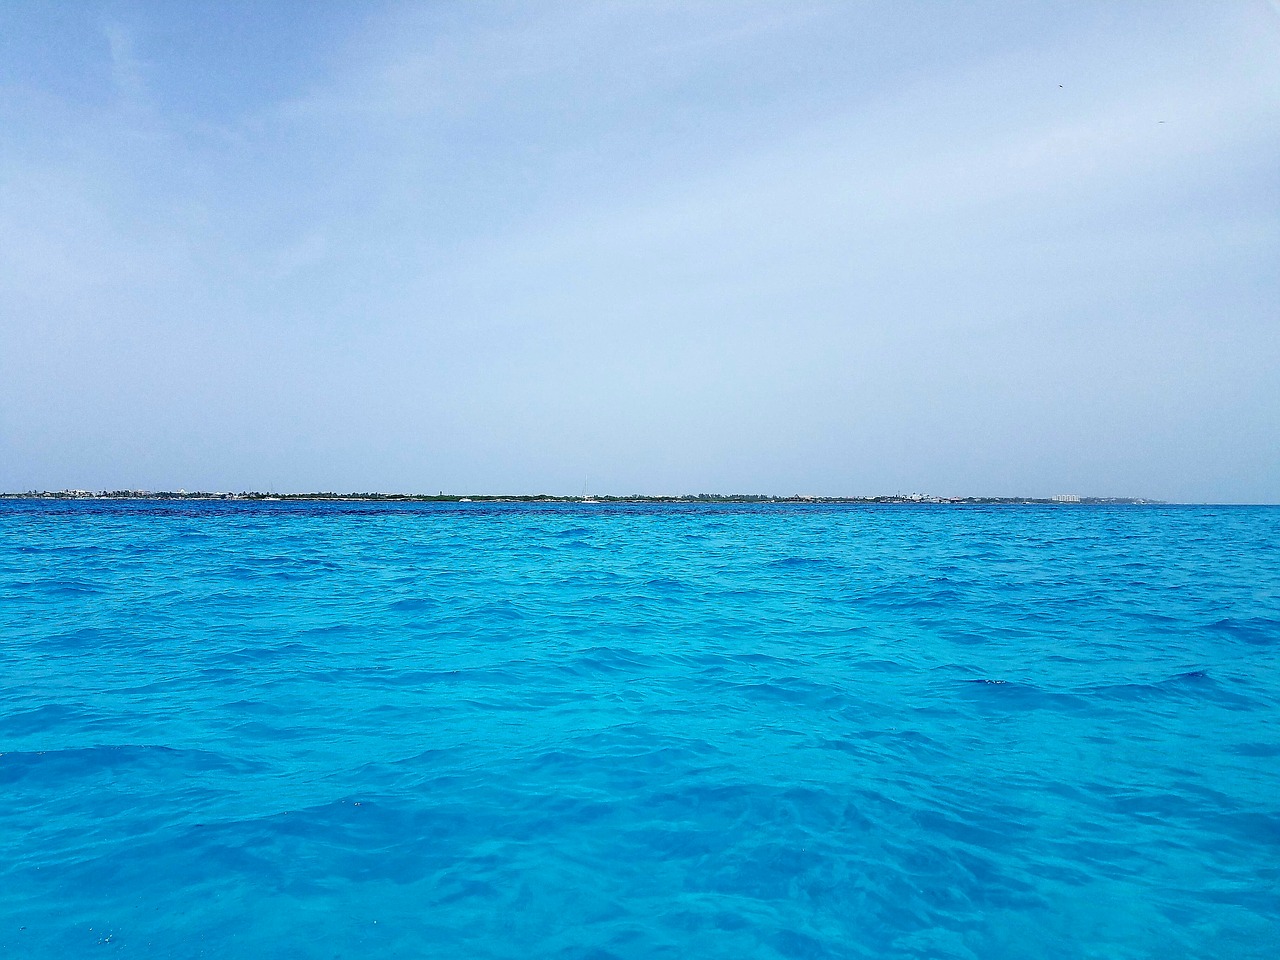 Incrível esse tom de azul do Mar do Caribe em Isla Mujeres, não é verdade?